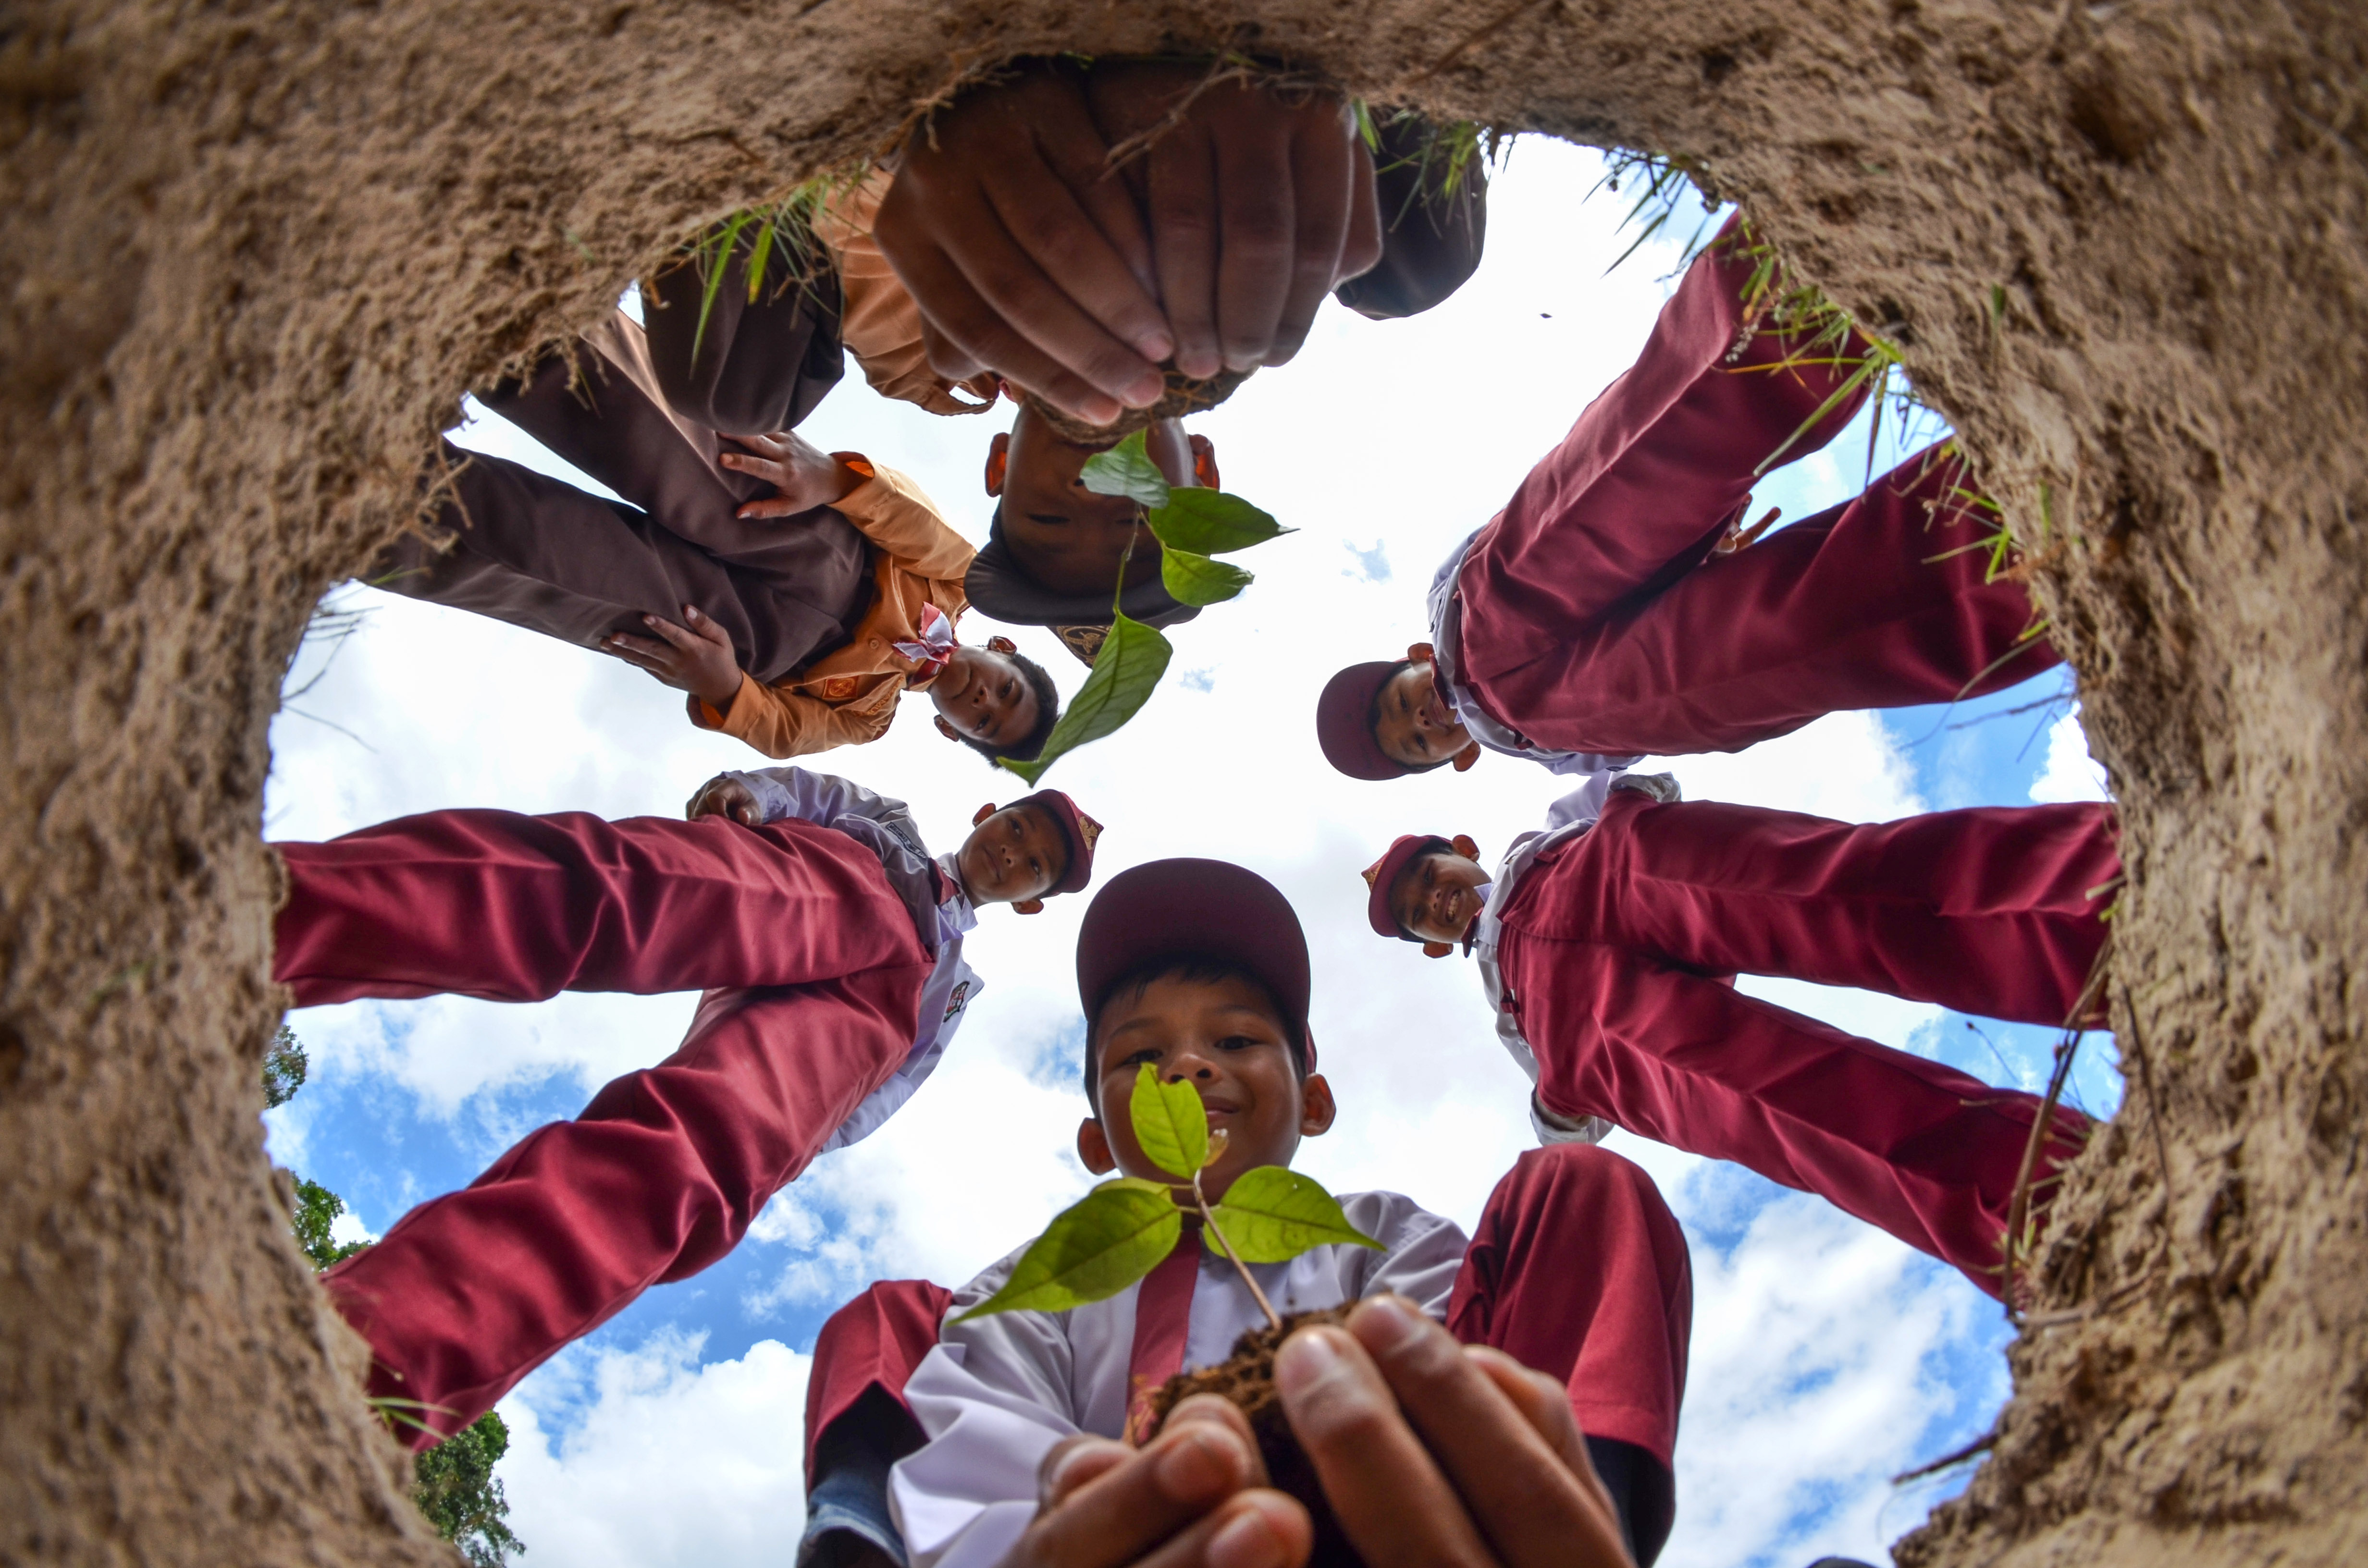 Sekolah Sehat: Mewujudkan Anak Indonesia yang Sehat, Kuat, dan Cerdas Berkarakter